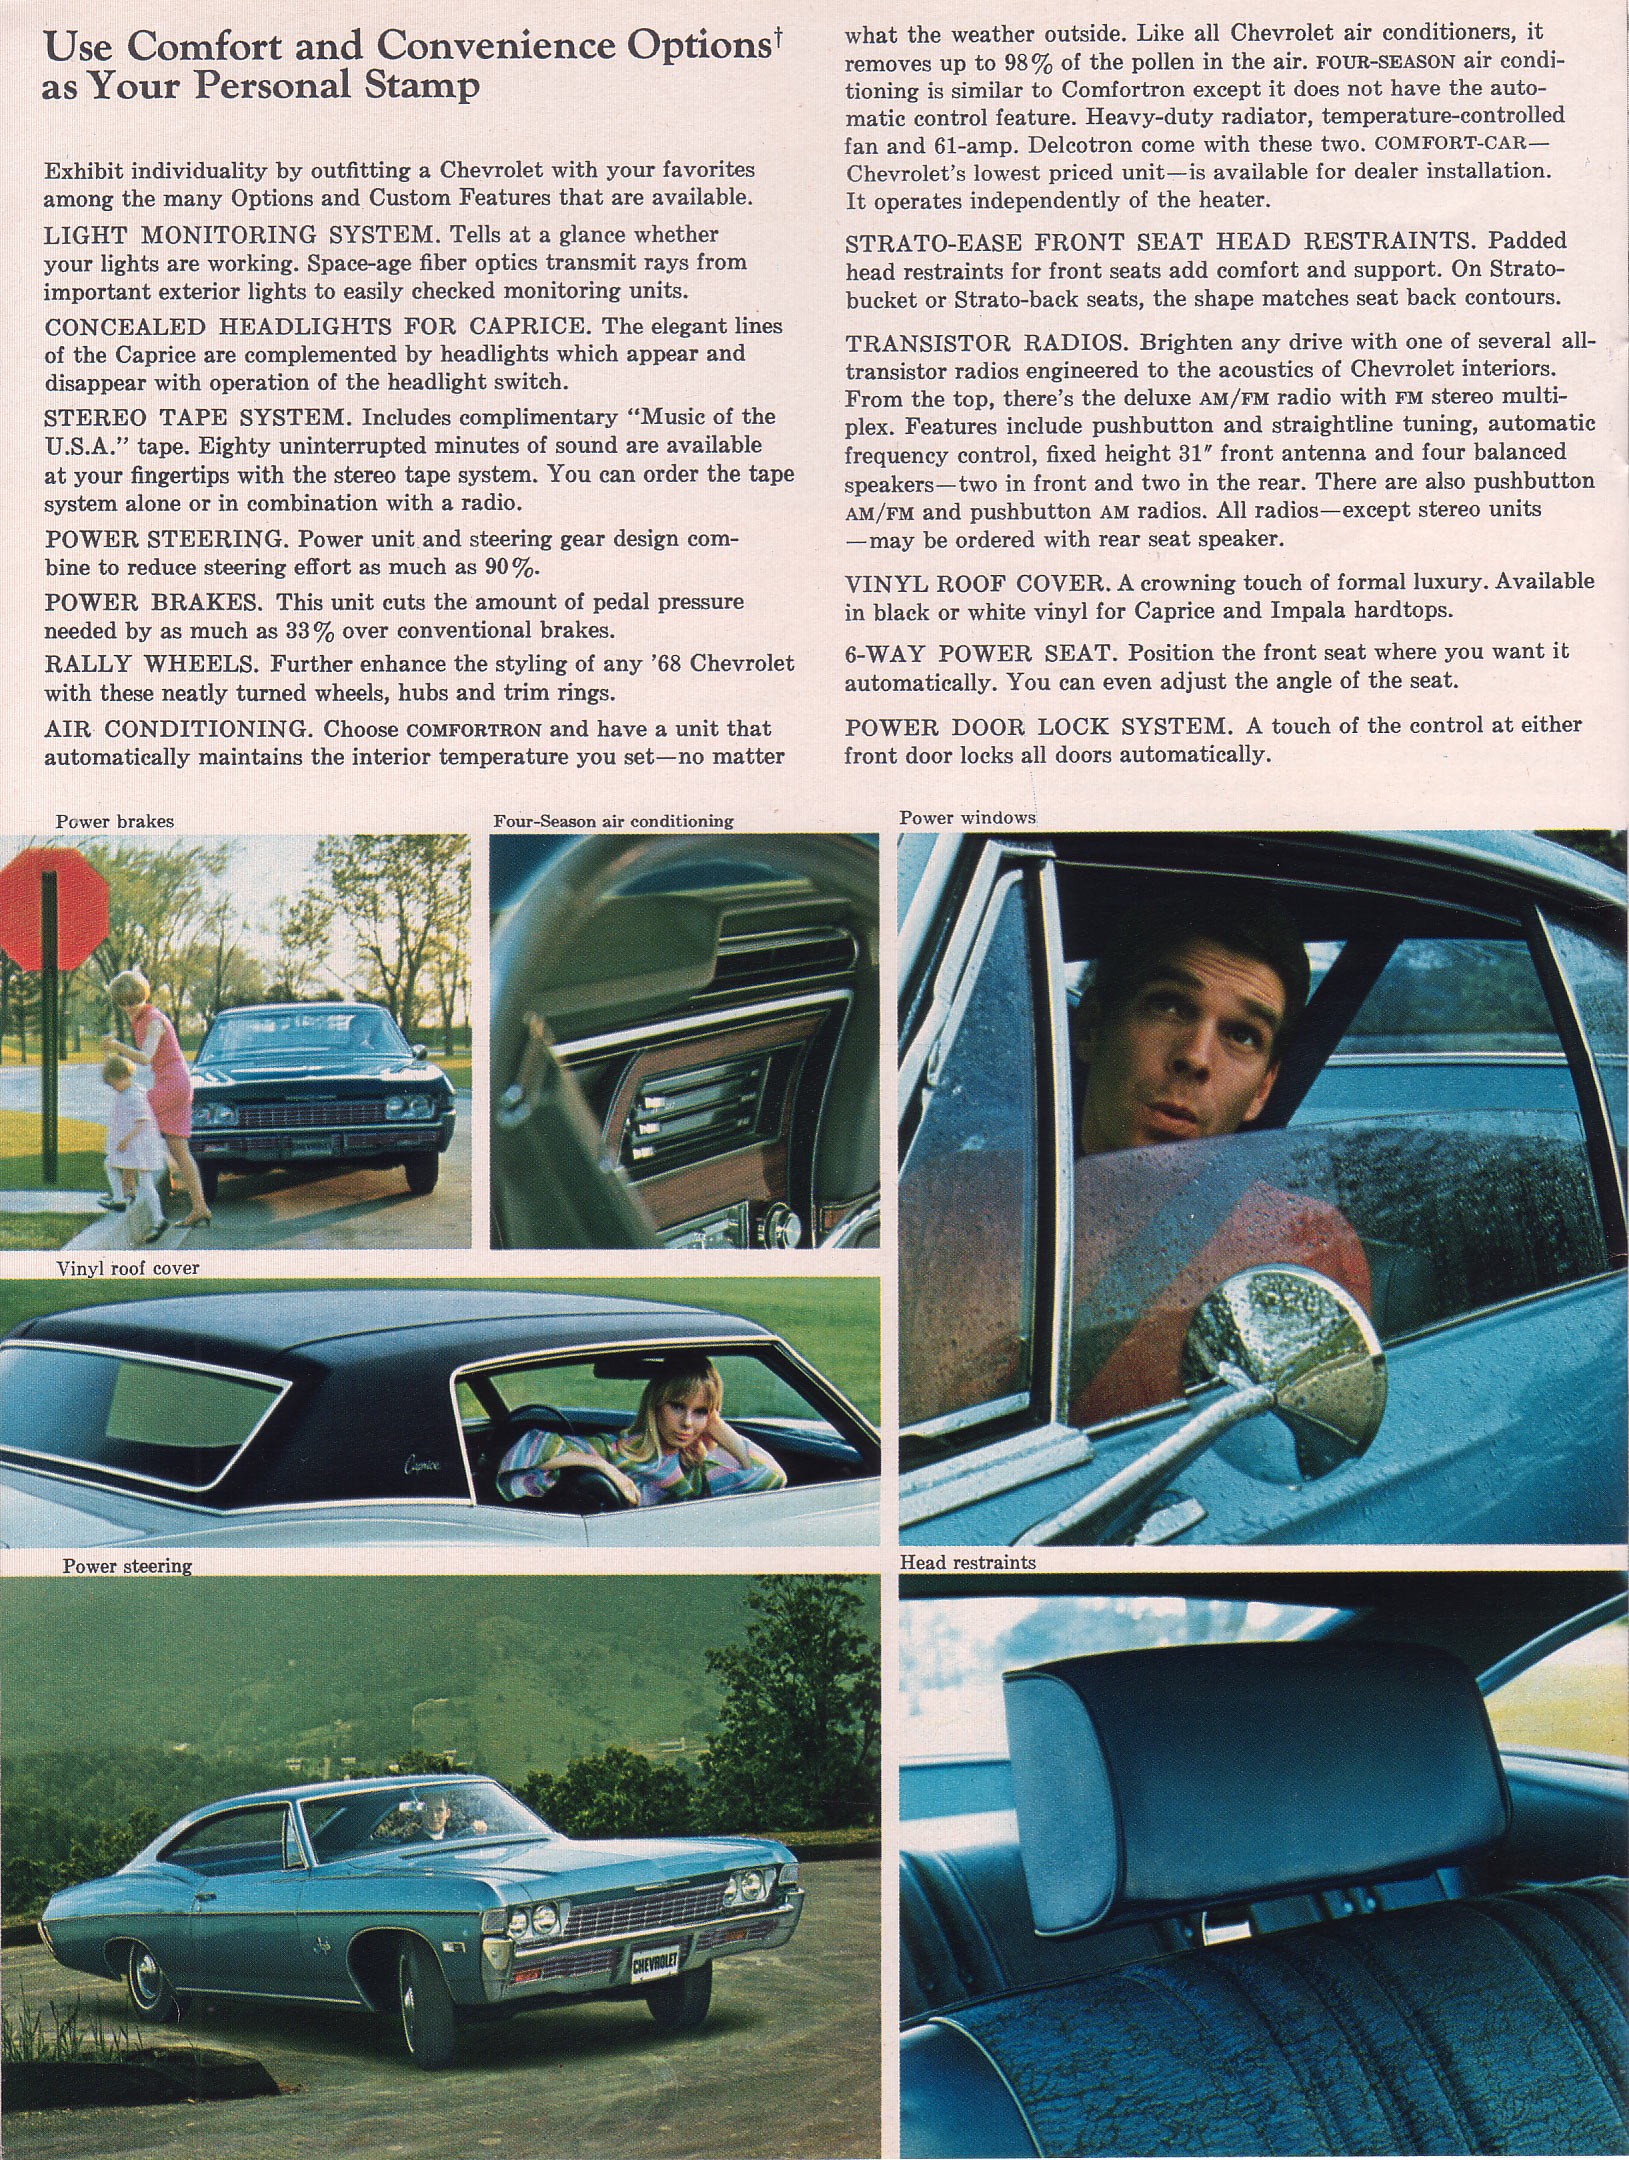 1968 Chevrolet Full Size-26